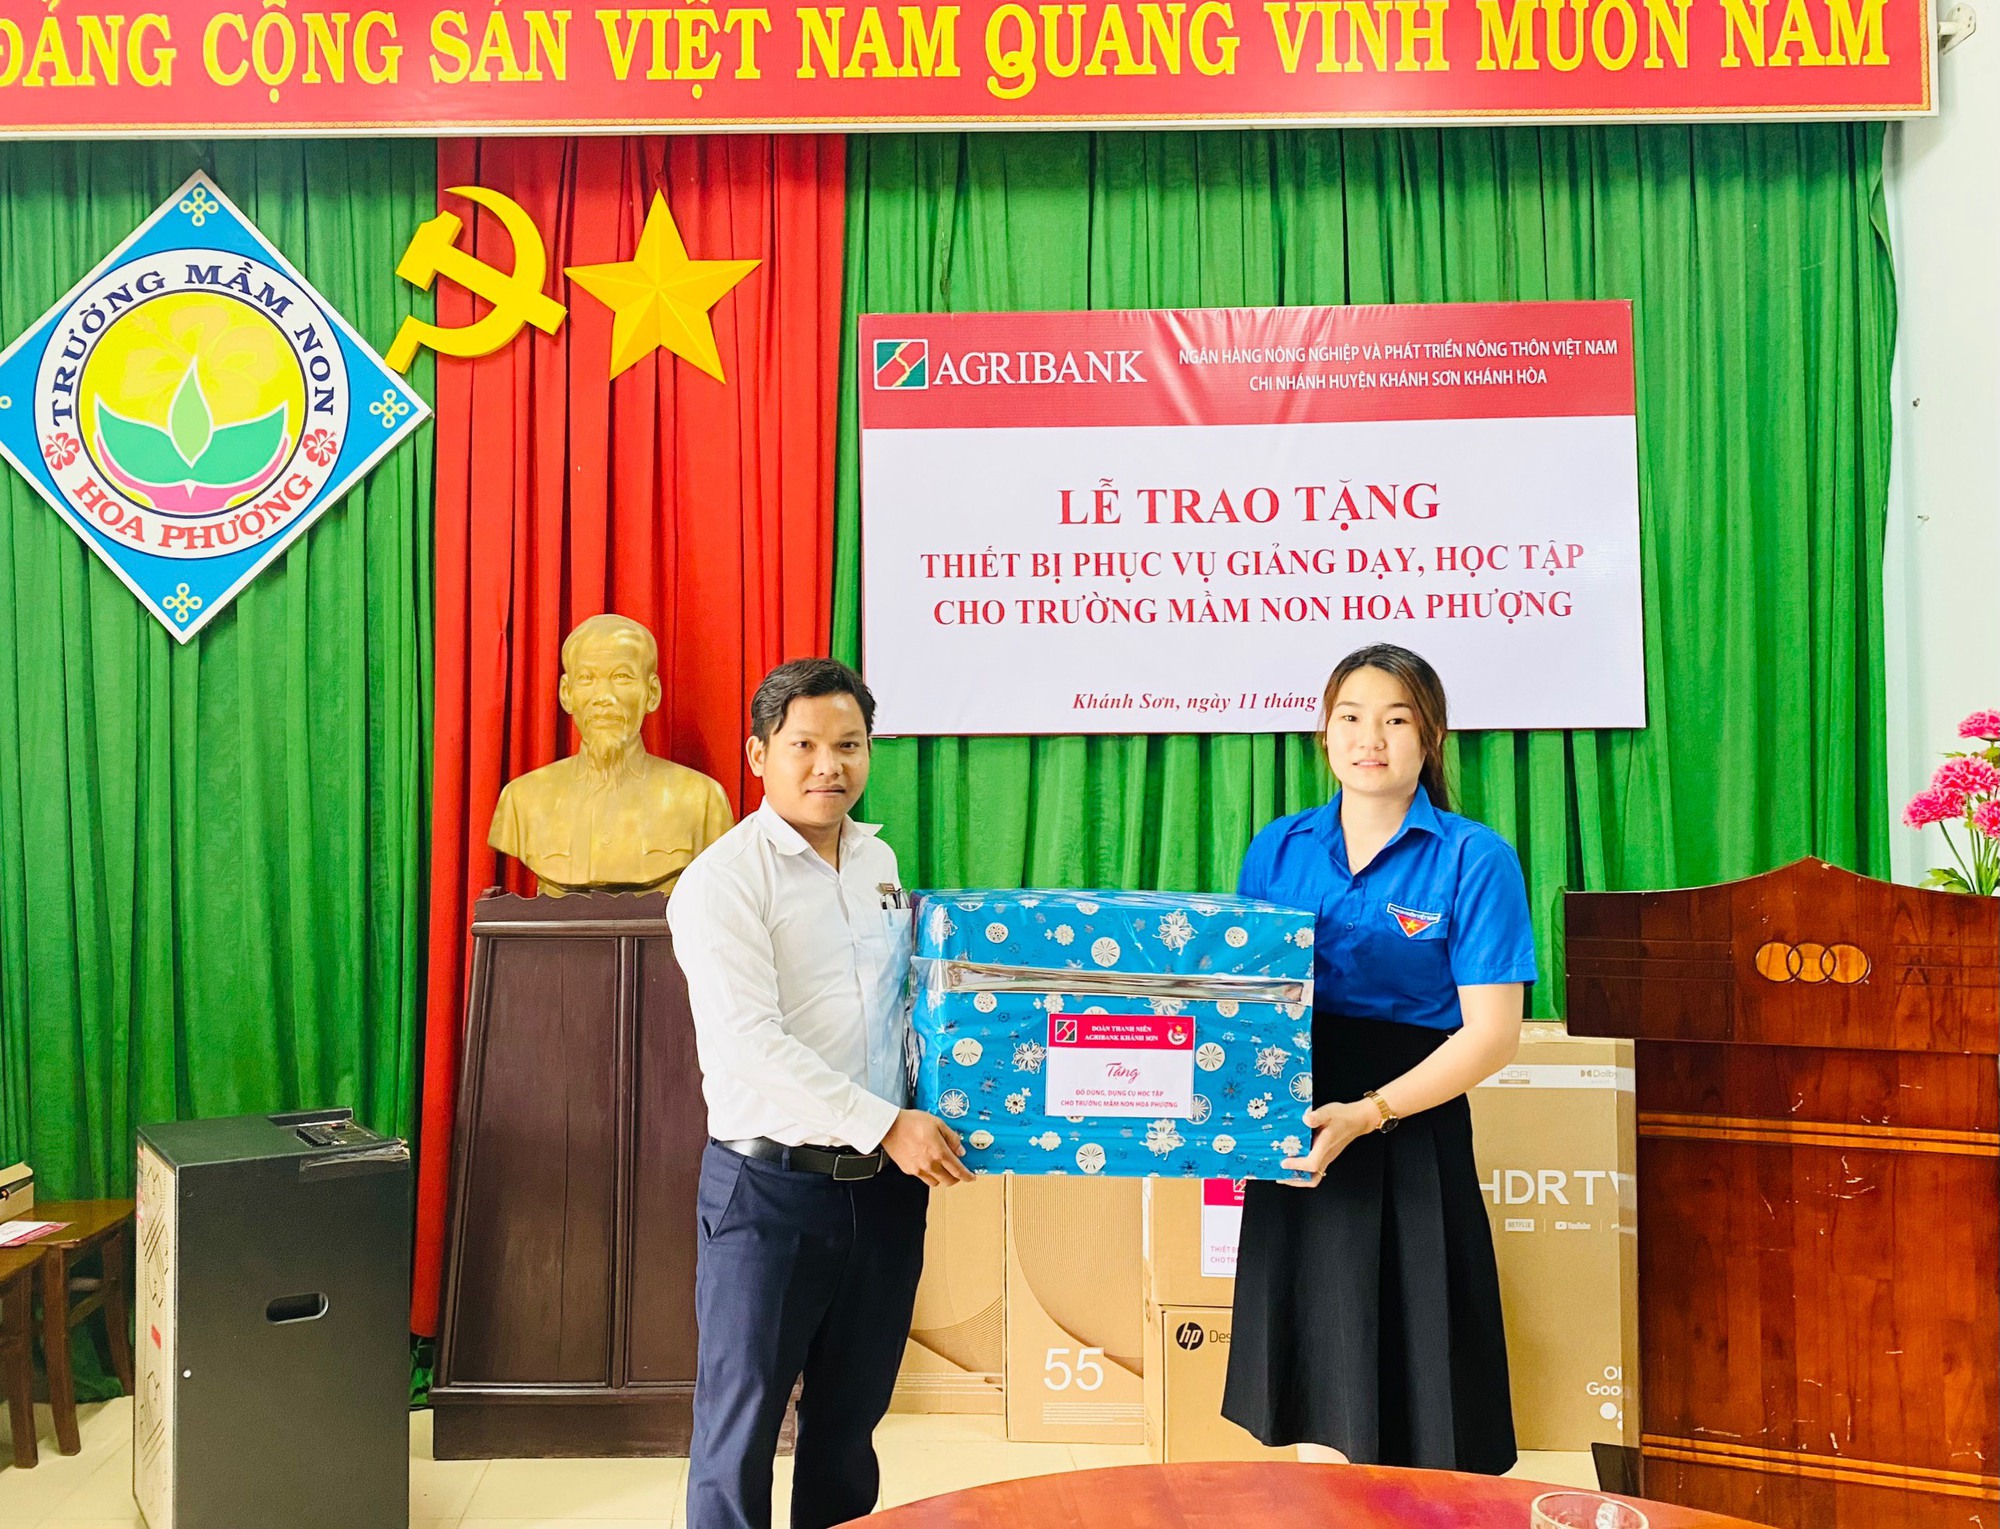 Agribank chi nhánh huyện Khánh Sơn trao tặng thiết bị phục vụ giảng dạy, học tập - Ảnh 2.